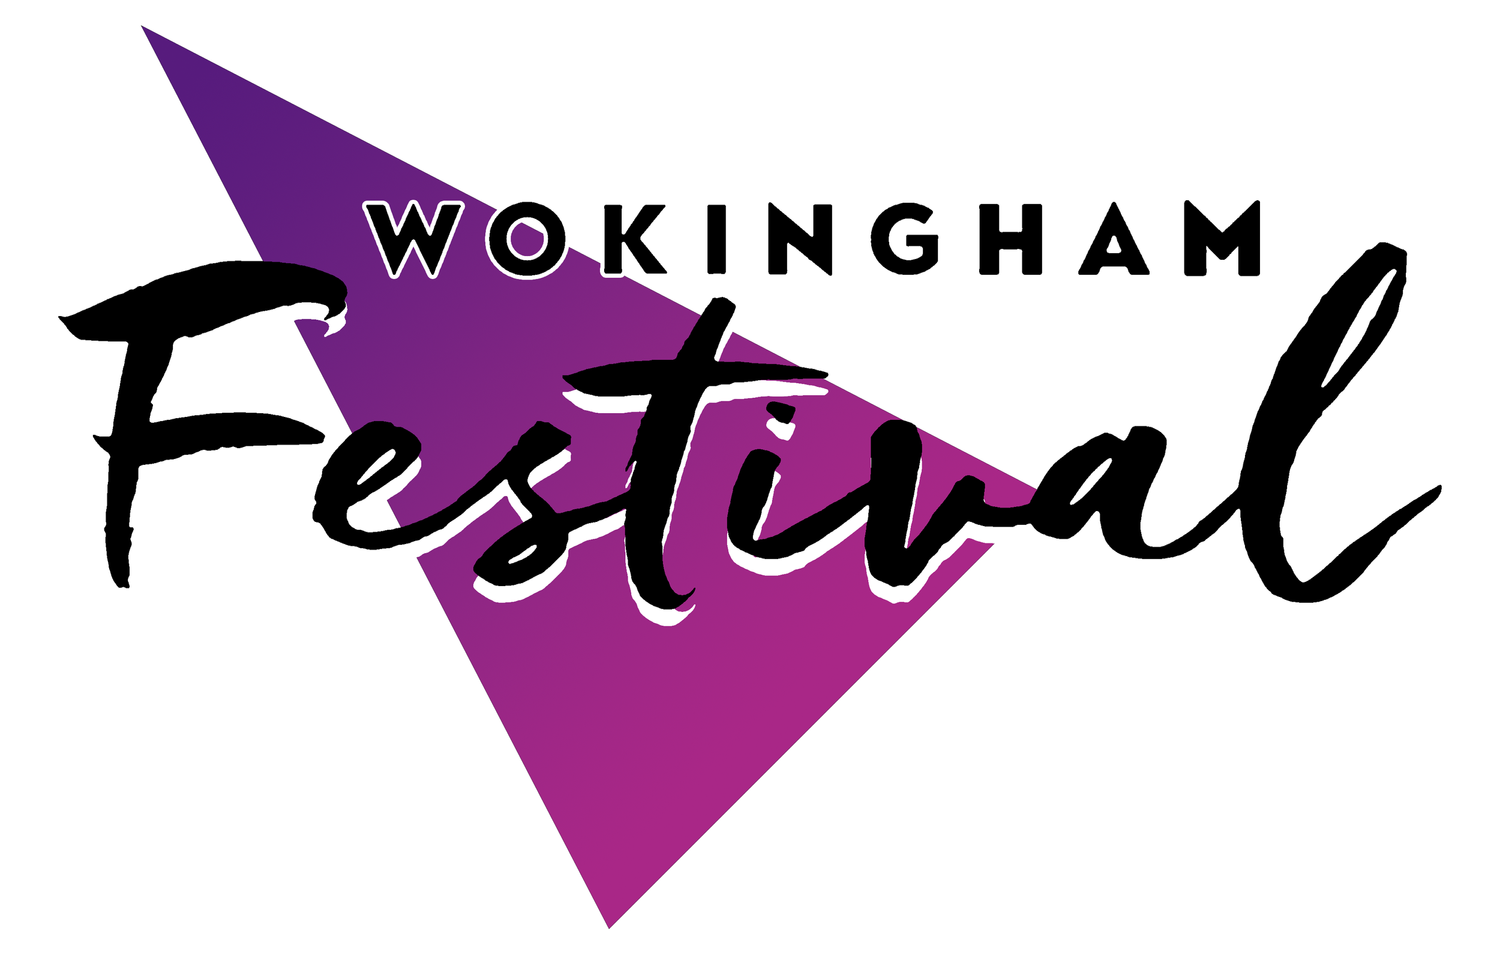 Wokingham Festival